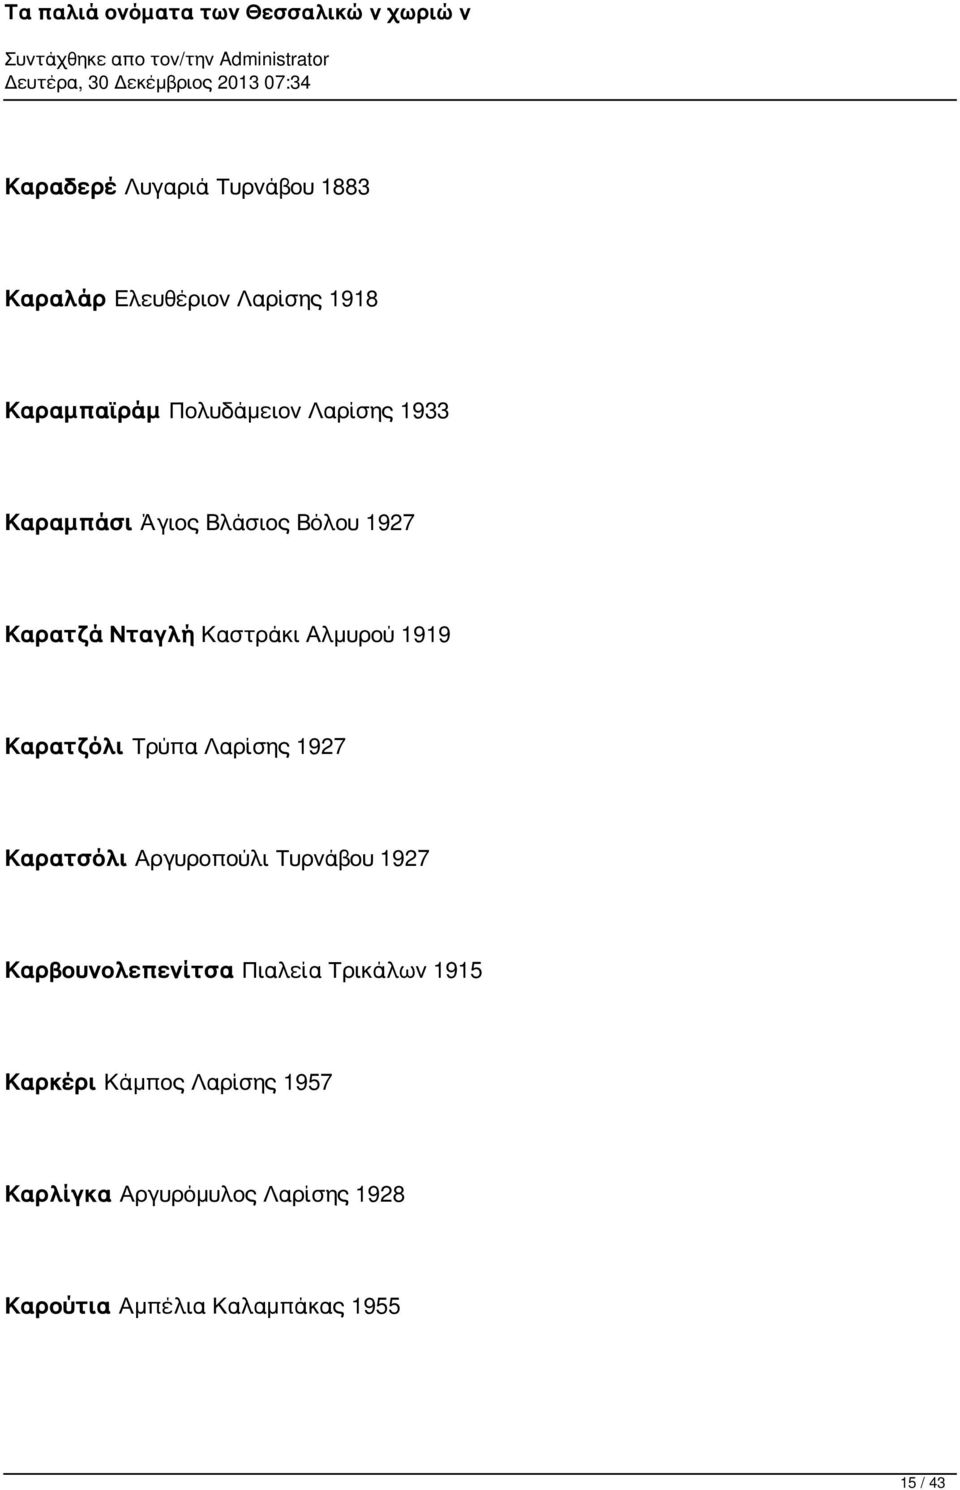 Λαρίσης 1927 Καρατσόλι Αργυροπούλι Τυρνάβου 1927 Καρβουνολεπενίτσα Πιαλεία Τρικάλων 1915